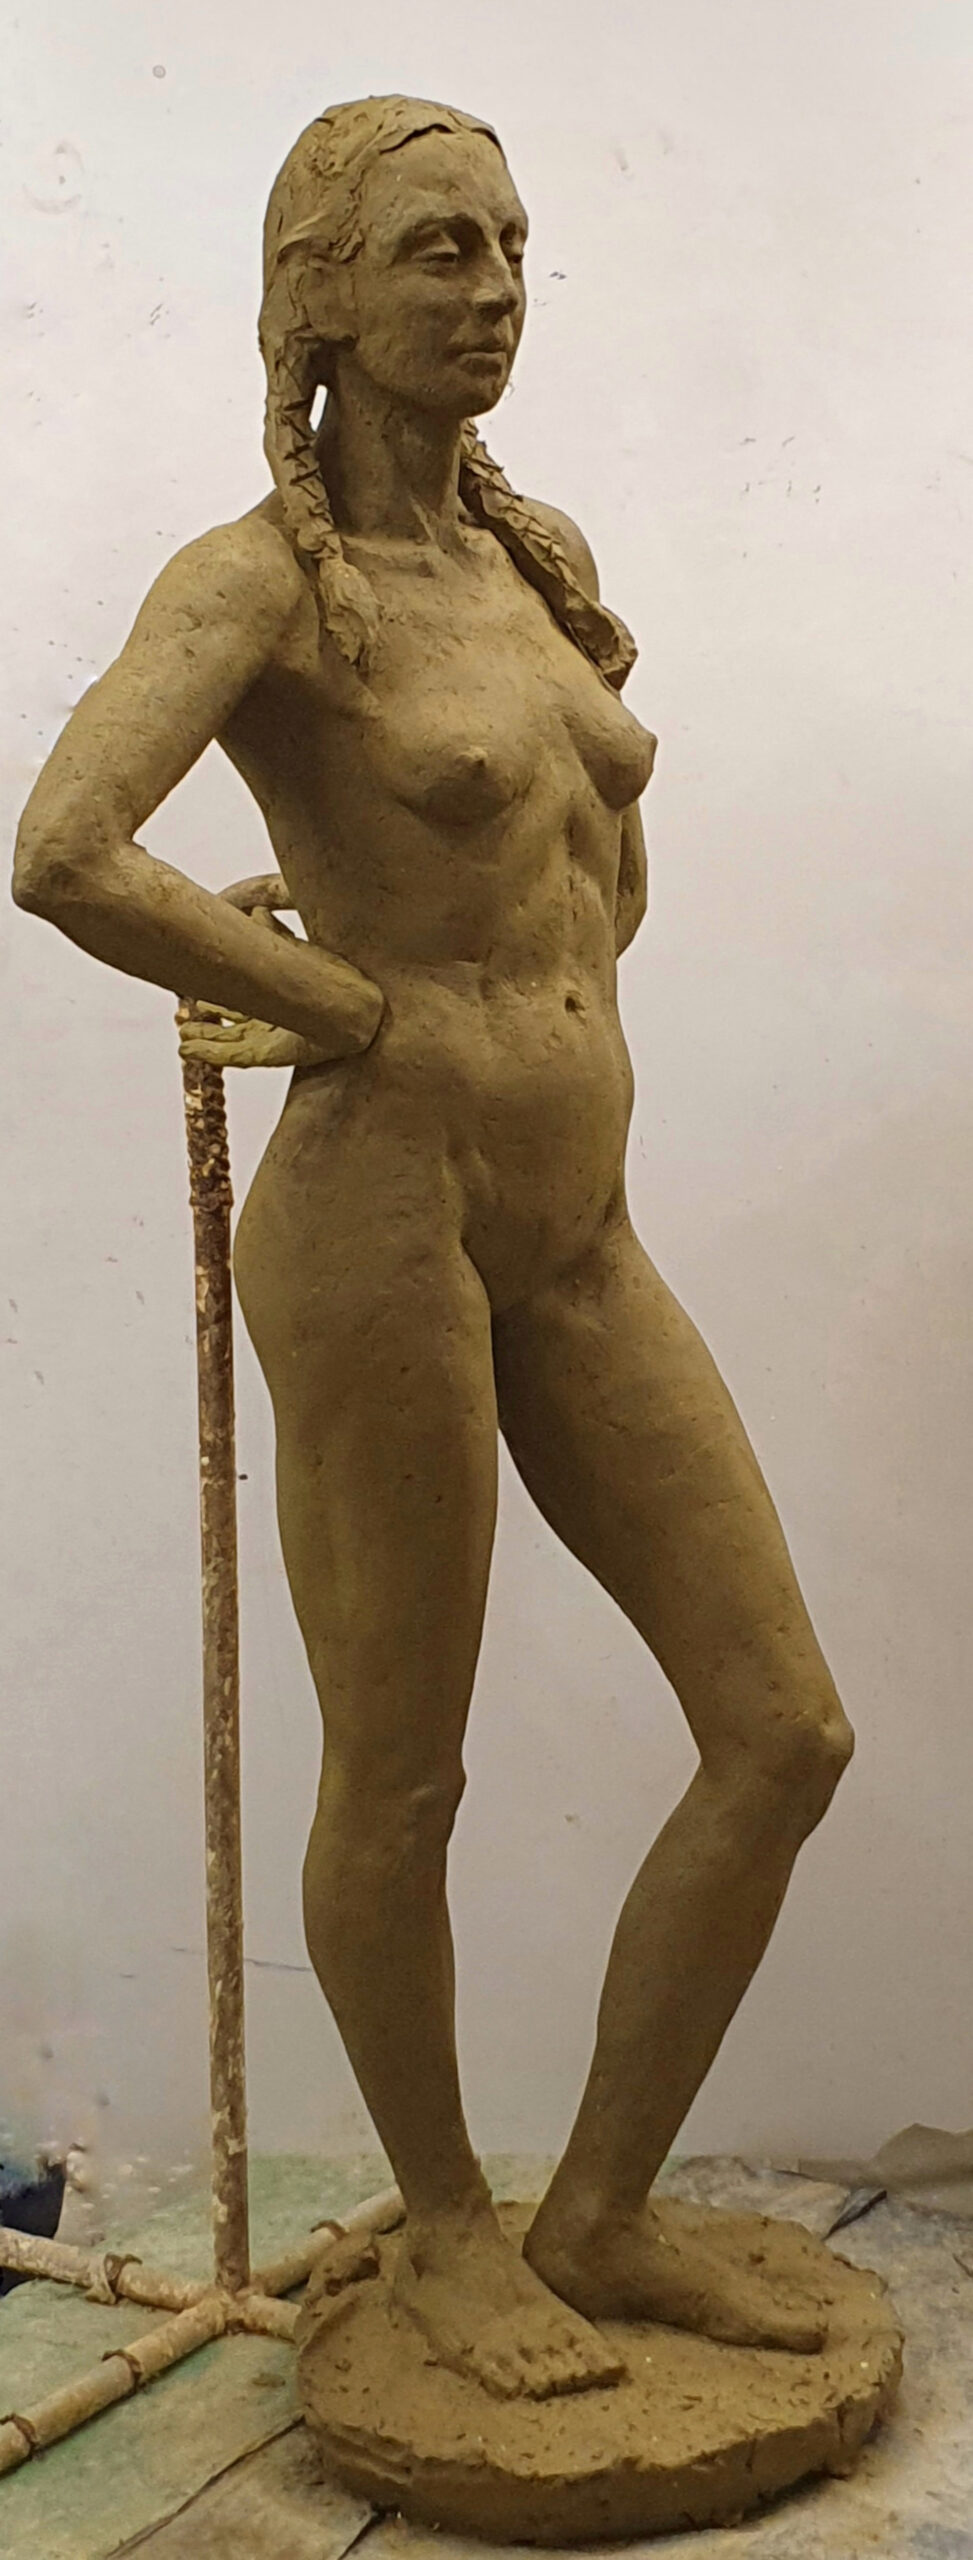  zdjęcie przedstawia rzeźbę wykonaną w glinie: postać kobiecą stojącą w kontrapoście, z ciężarem ciała na prawej nodze. Ręce ugięte w łokciach, oparte na plecach. Postać stoi na podstawie. Ujęcie boczne